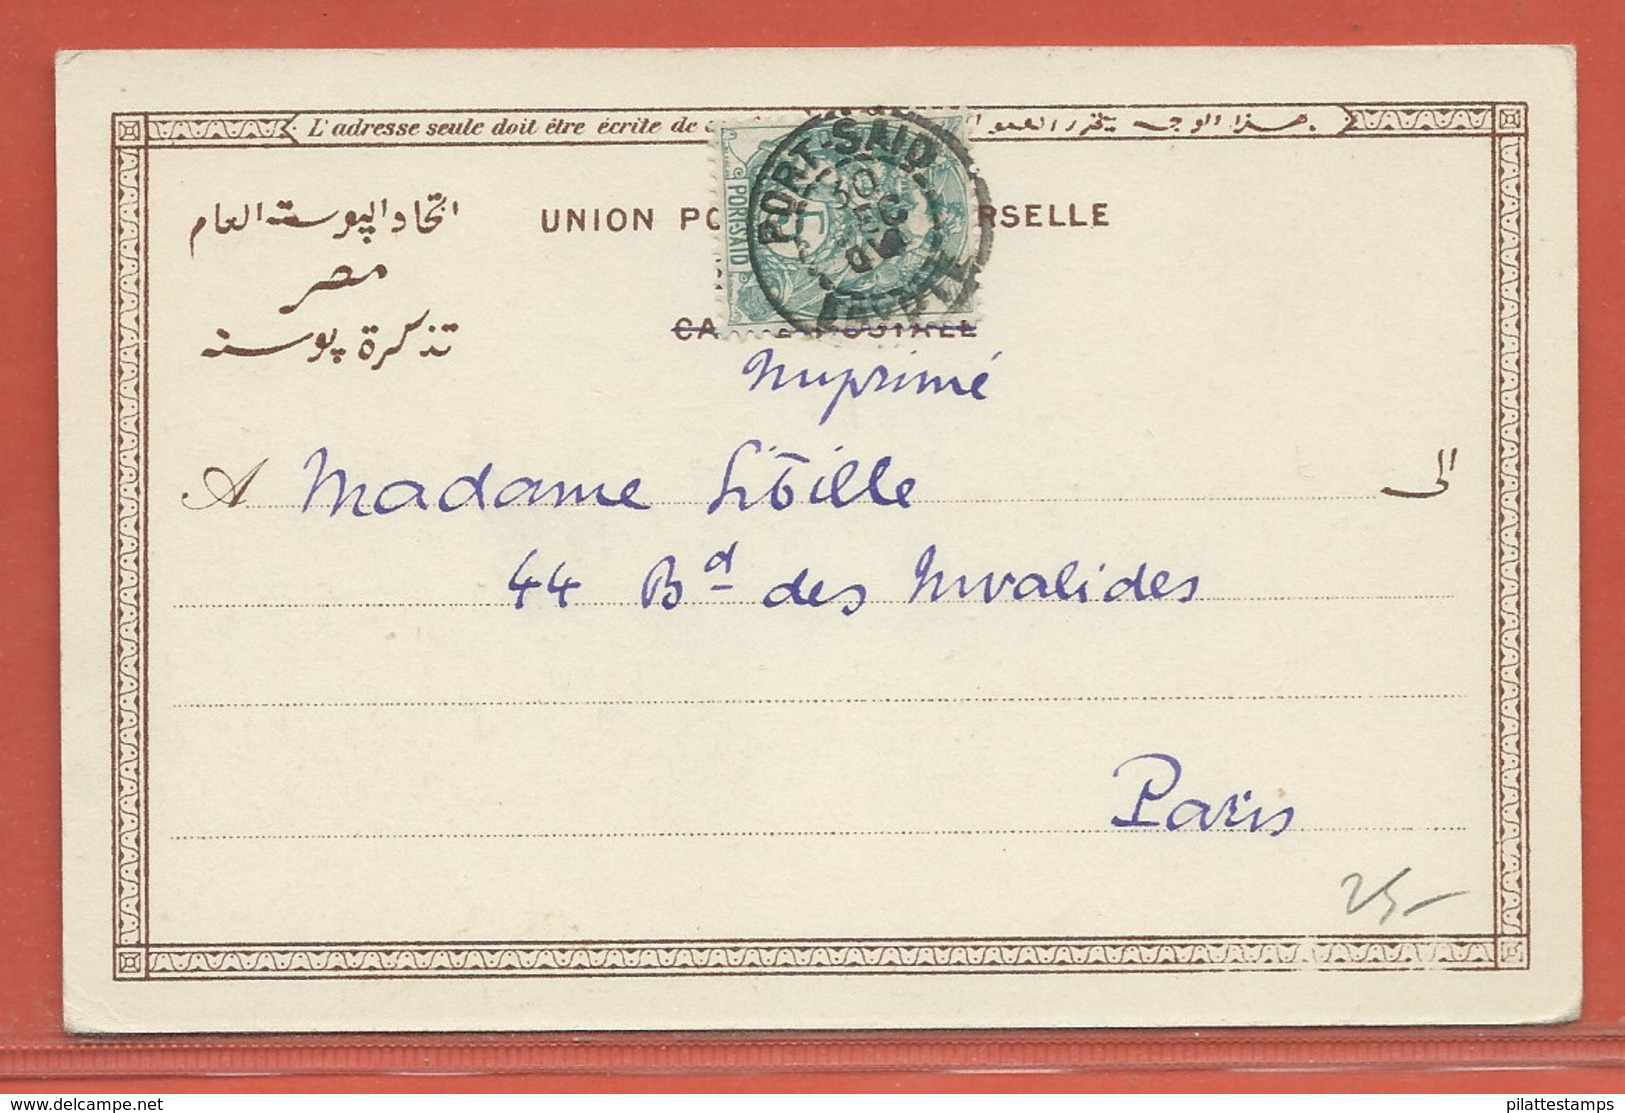 PORT SAID CARTE POSTALE AFFRANCHIE DE 1906 POUR POUR PARIS FRANCE - Covers & Documents